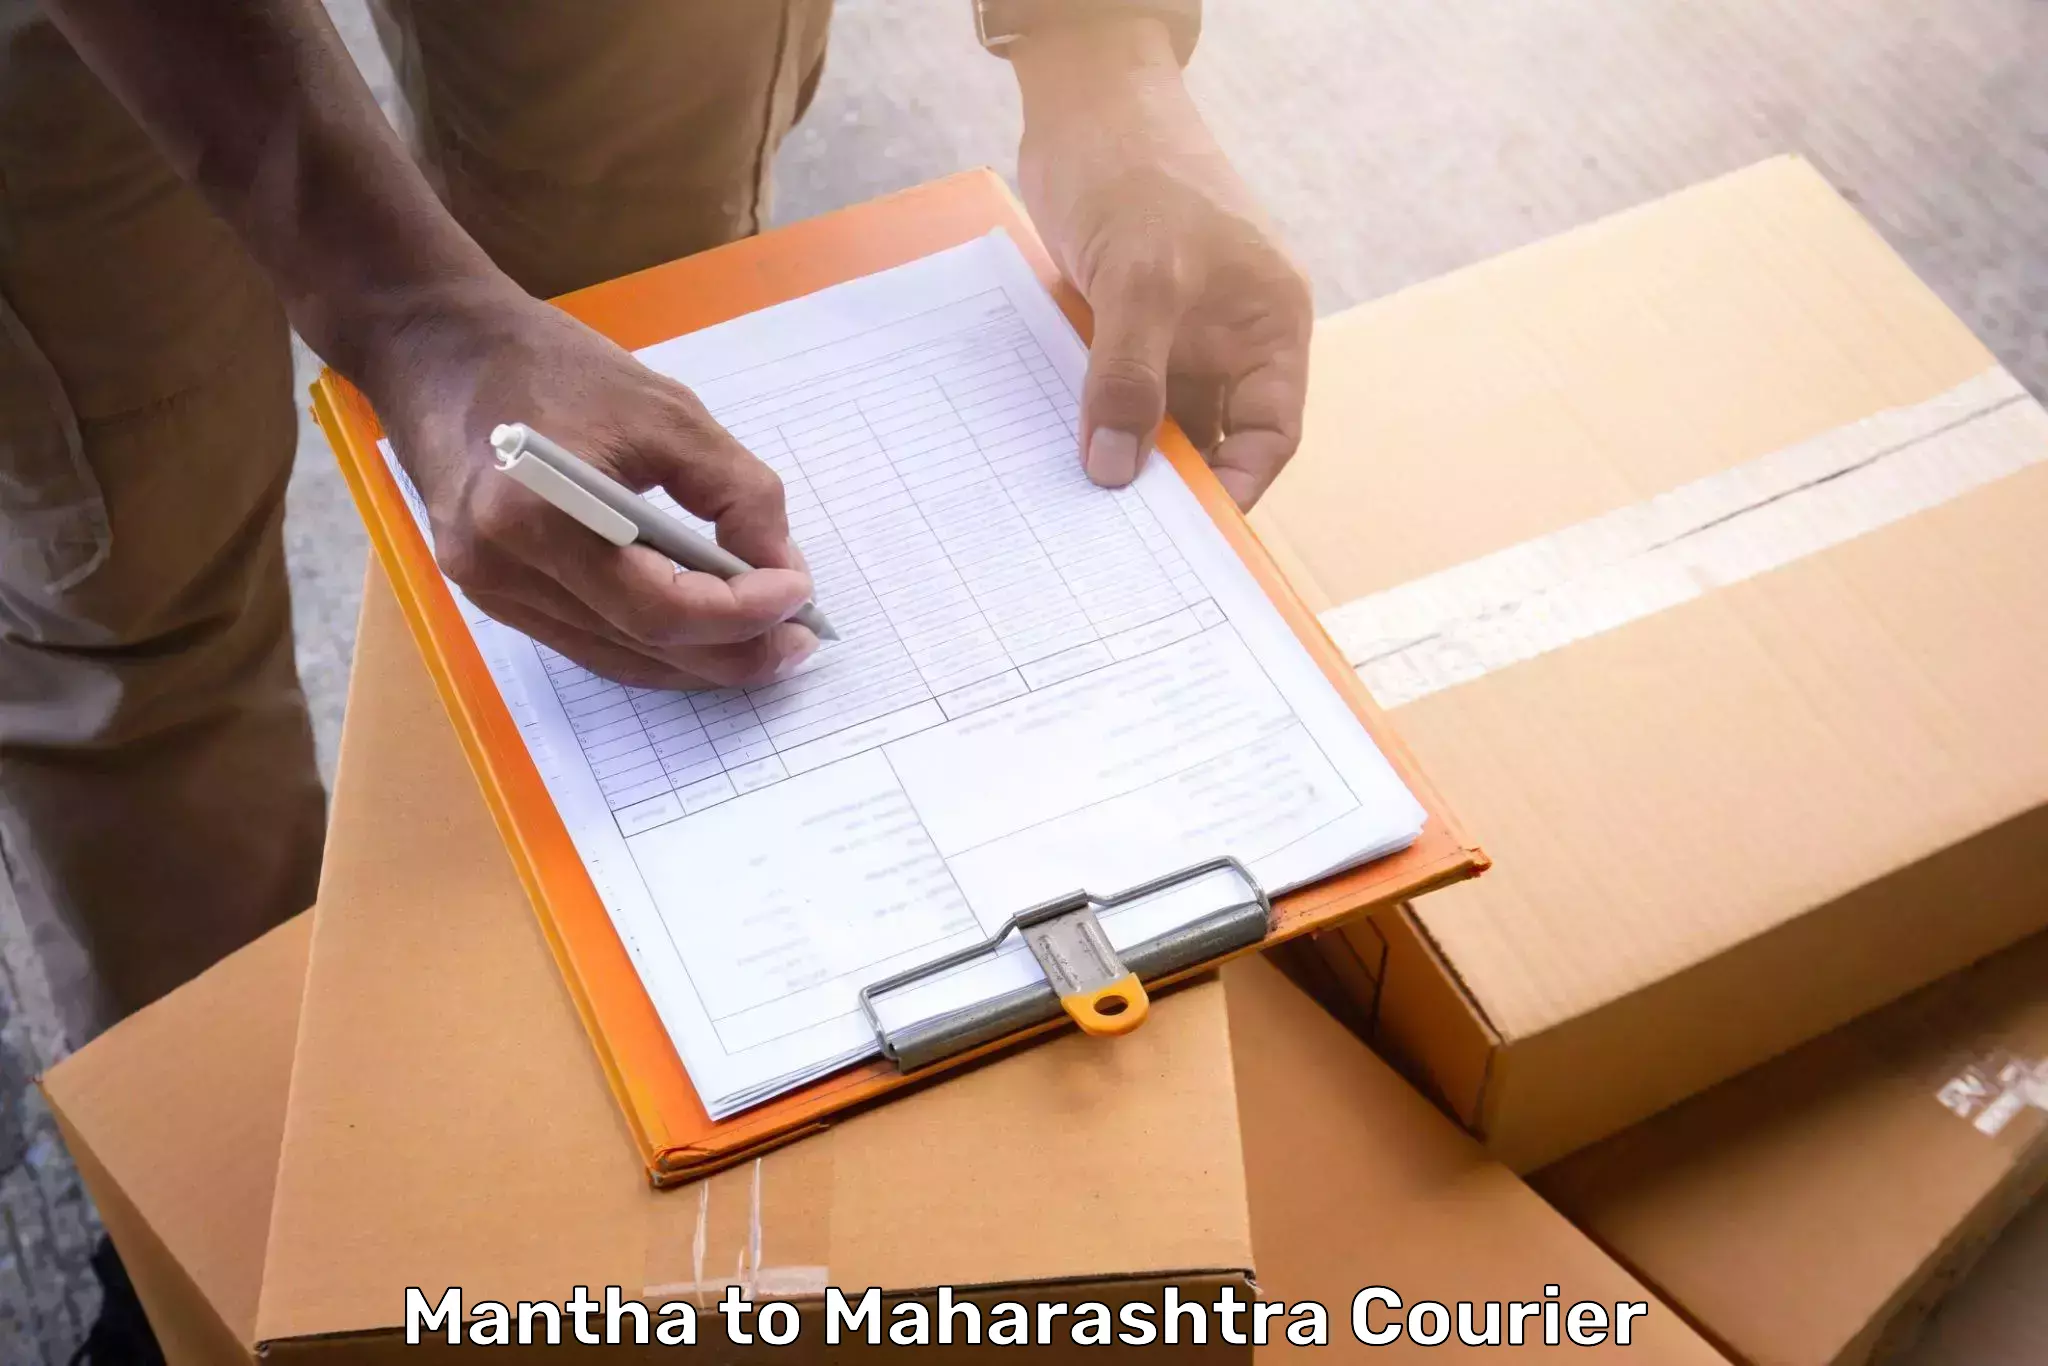 Luggage shipping service Mantha to Maharashtra